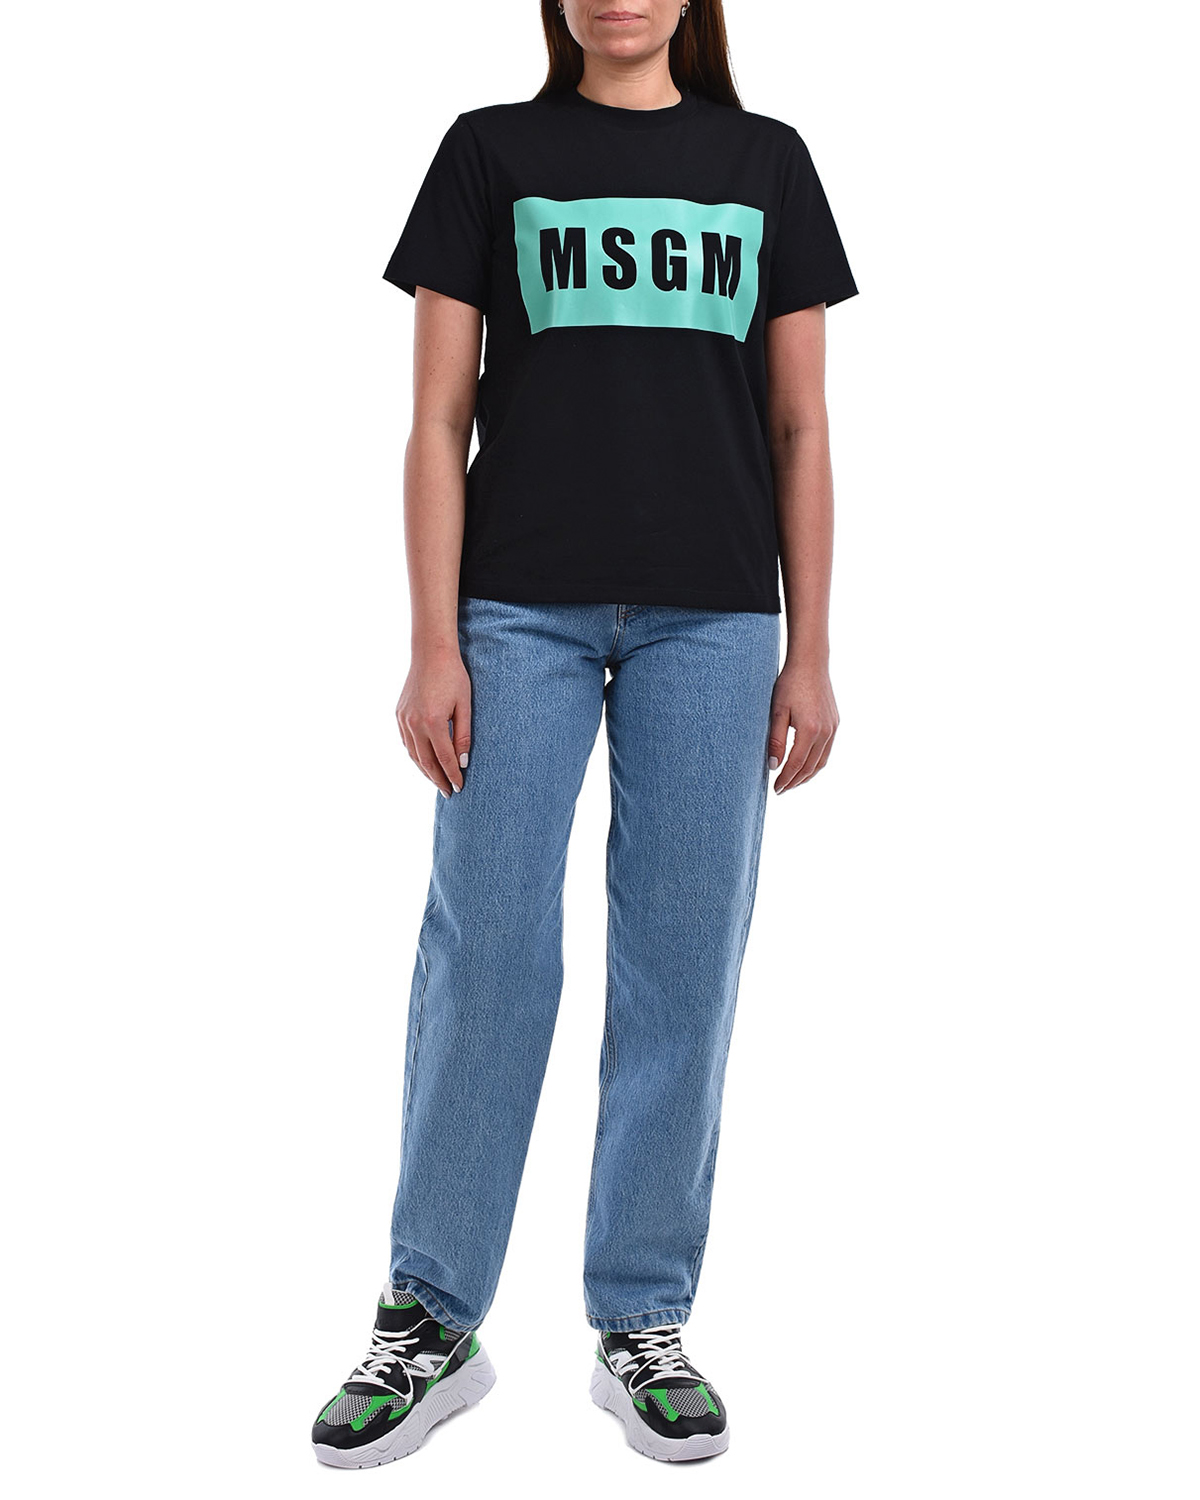 Черная футболка с прямоугольным принтом MSGM, размер 40, цвет черный - фото 3